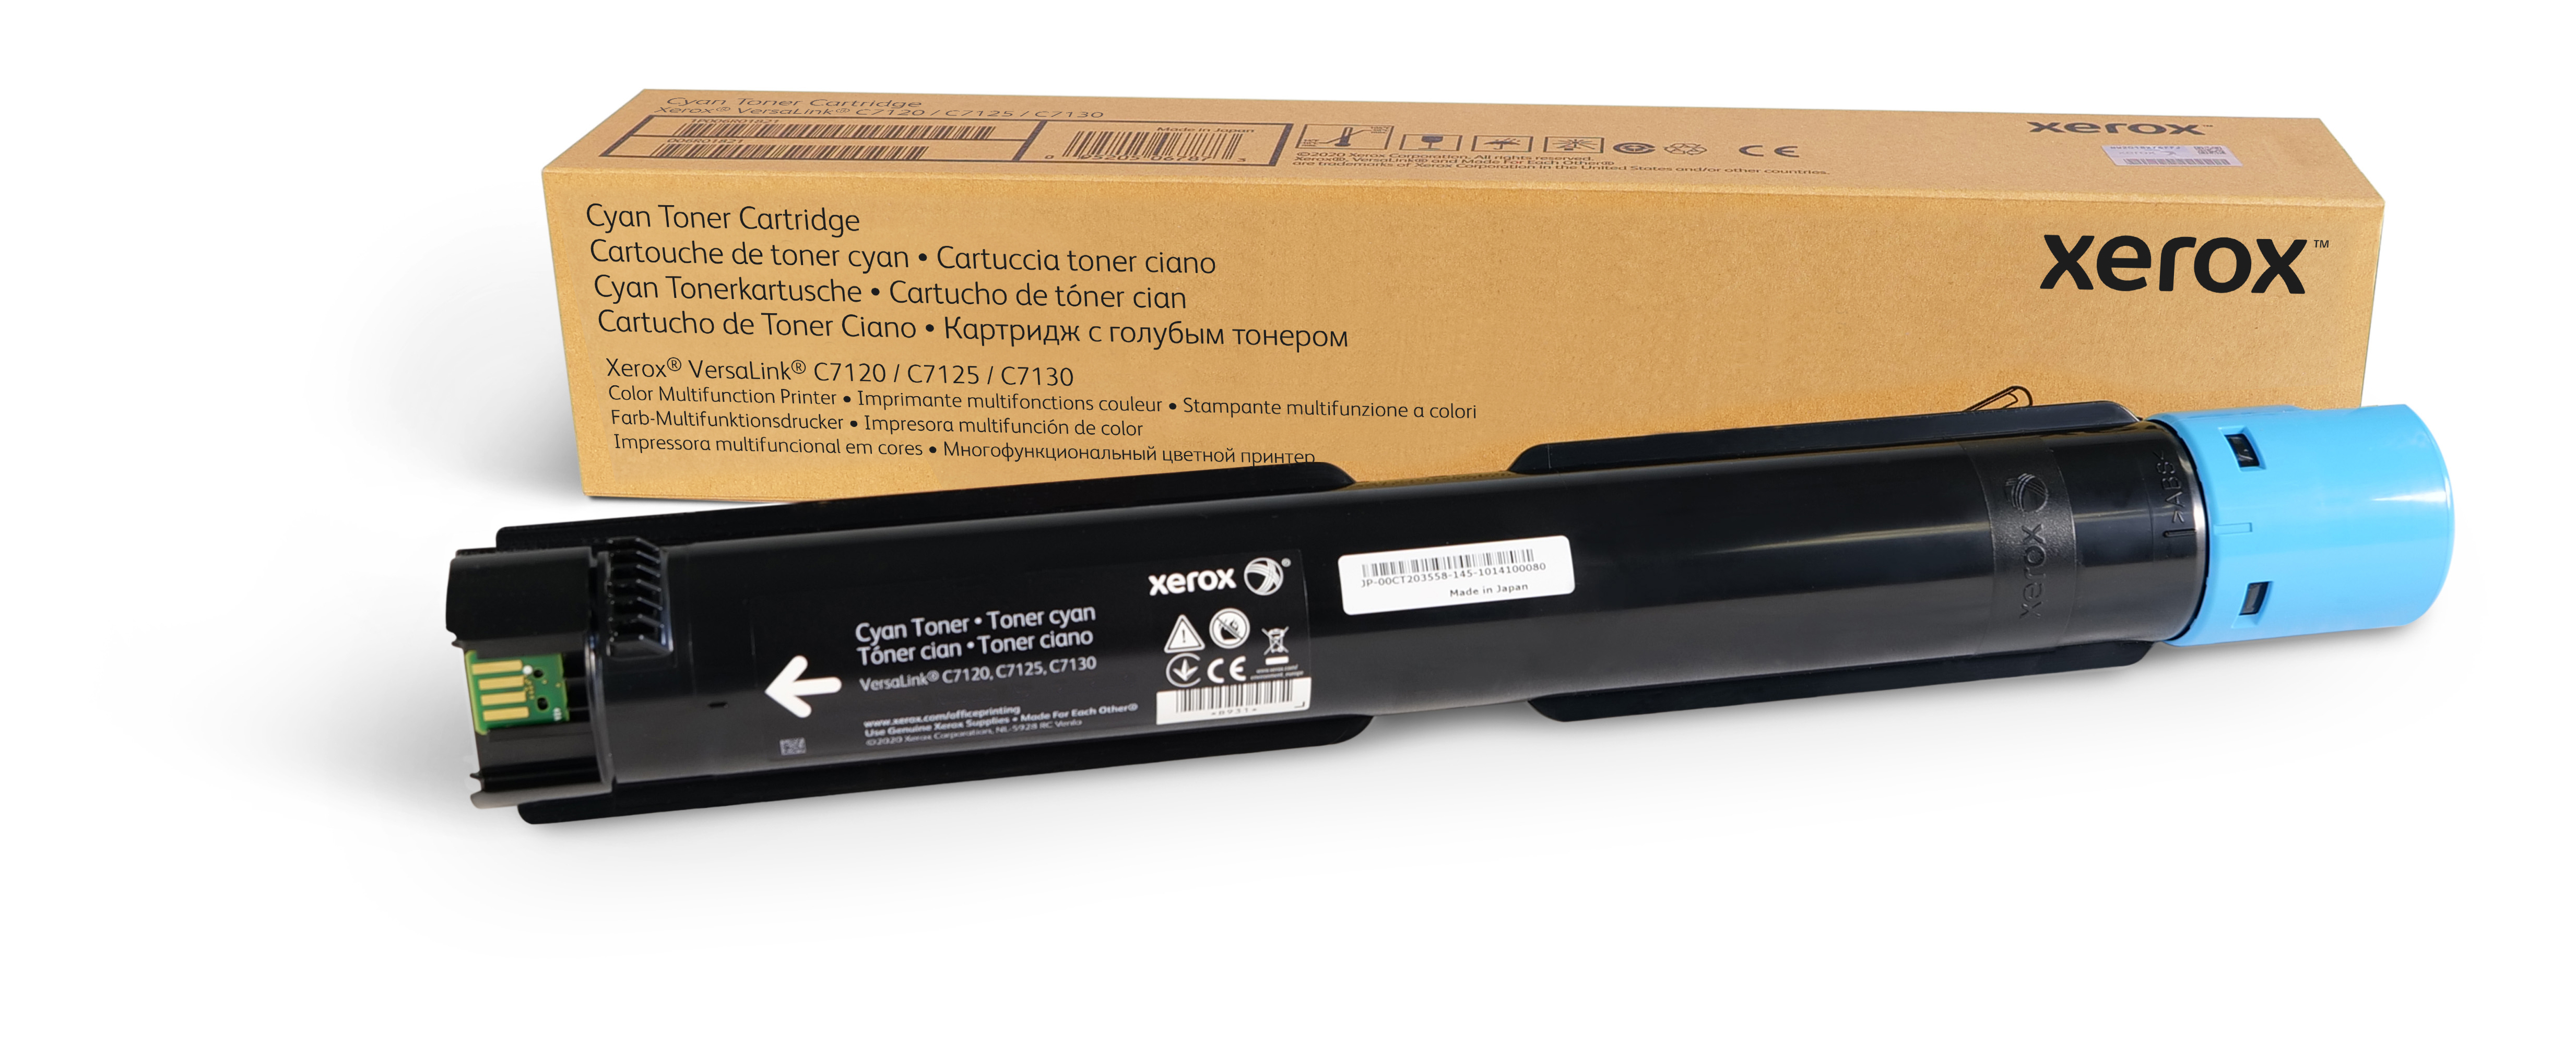 VersaLink C7100 Cartucho de Toner Ciano Sold 006R01825 Genuine Xerox  Supplies